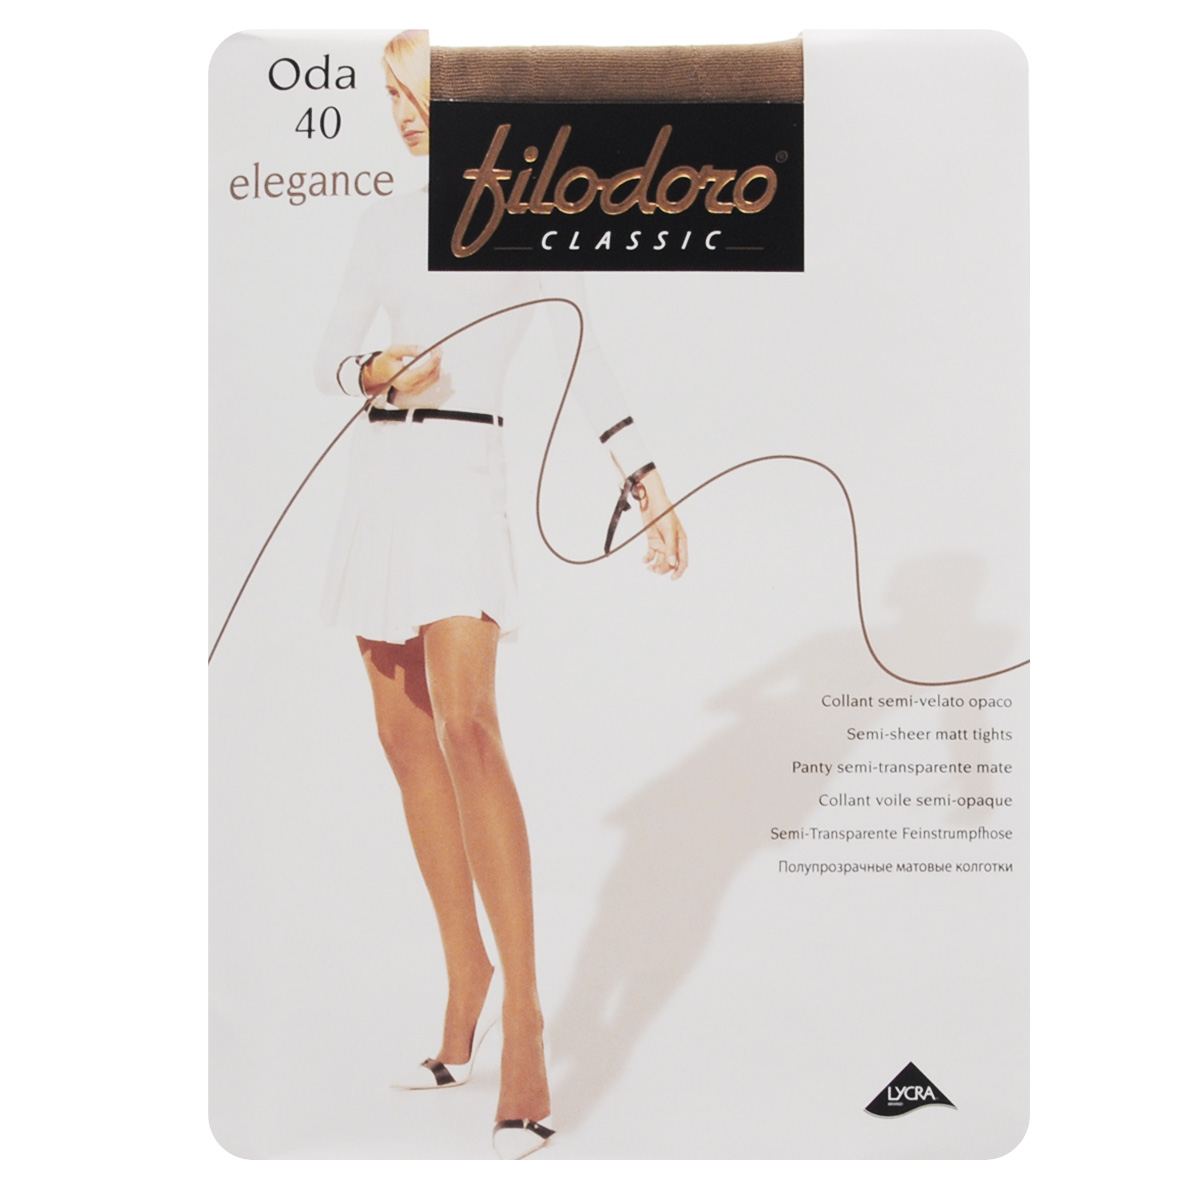 Колготки женские Filodoro Classic Oda 40 Elegance, цвет: Cognac (загар). C113128FC. Размер 5 (Maxi-XL)